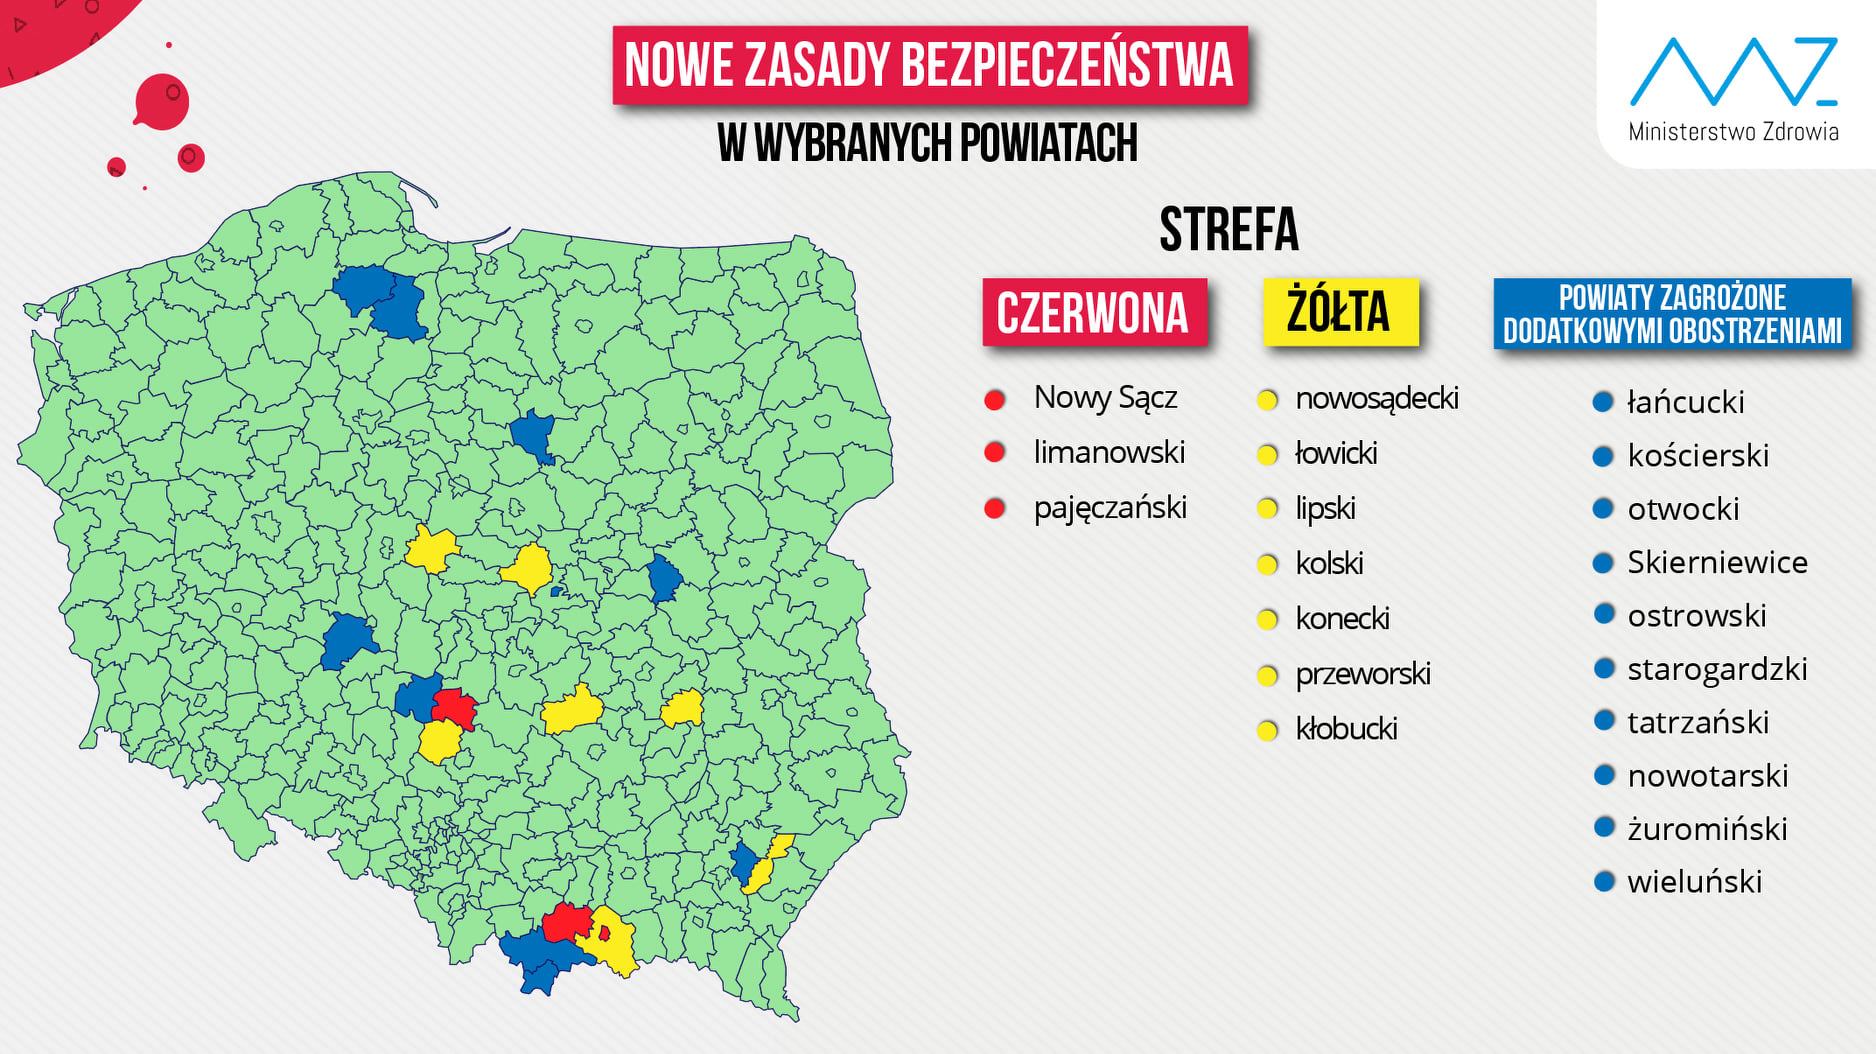 Obostrzenia koronawirusowe w Polsce